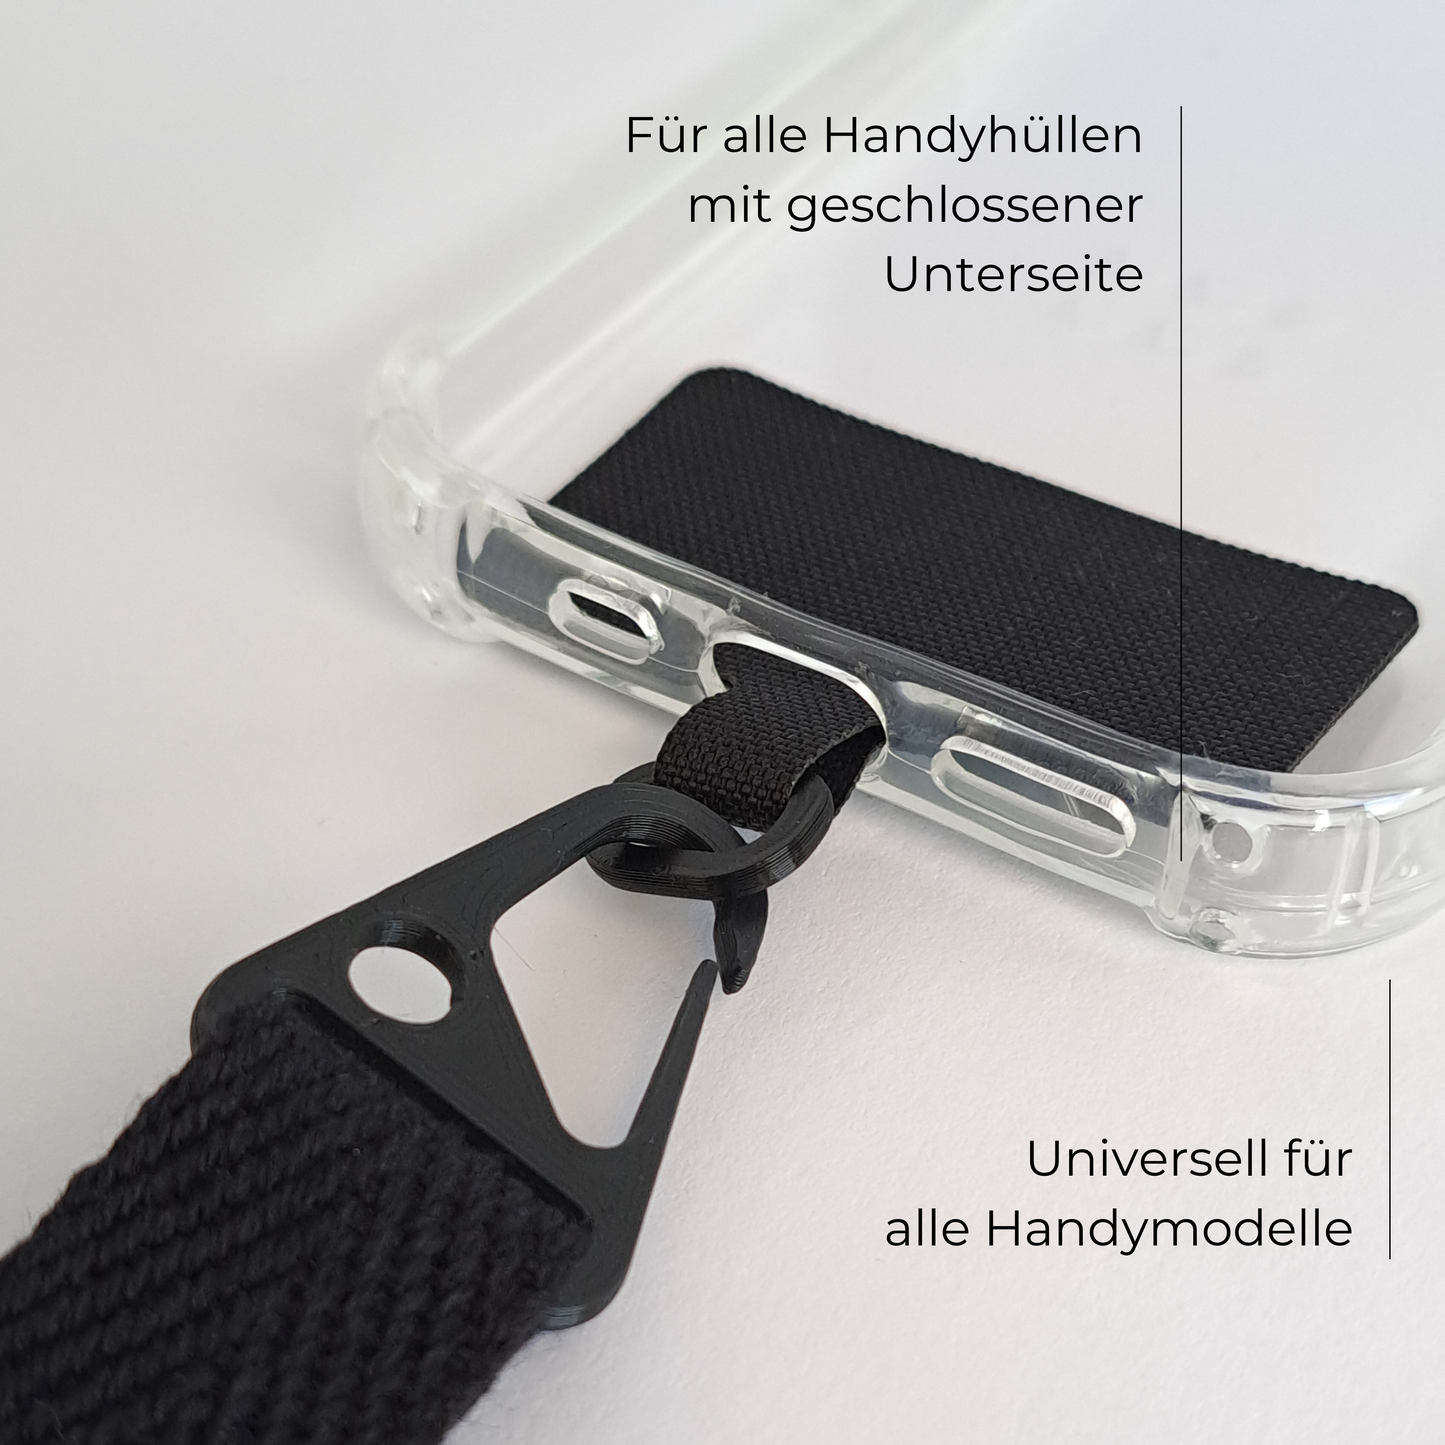 Universal-Adapter für Handybänder